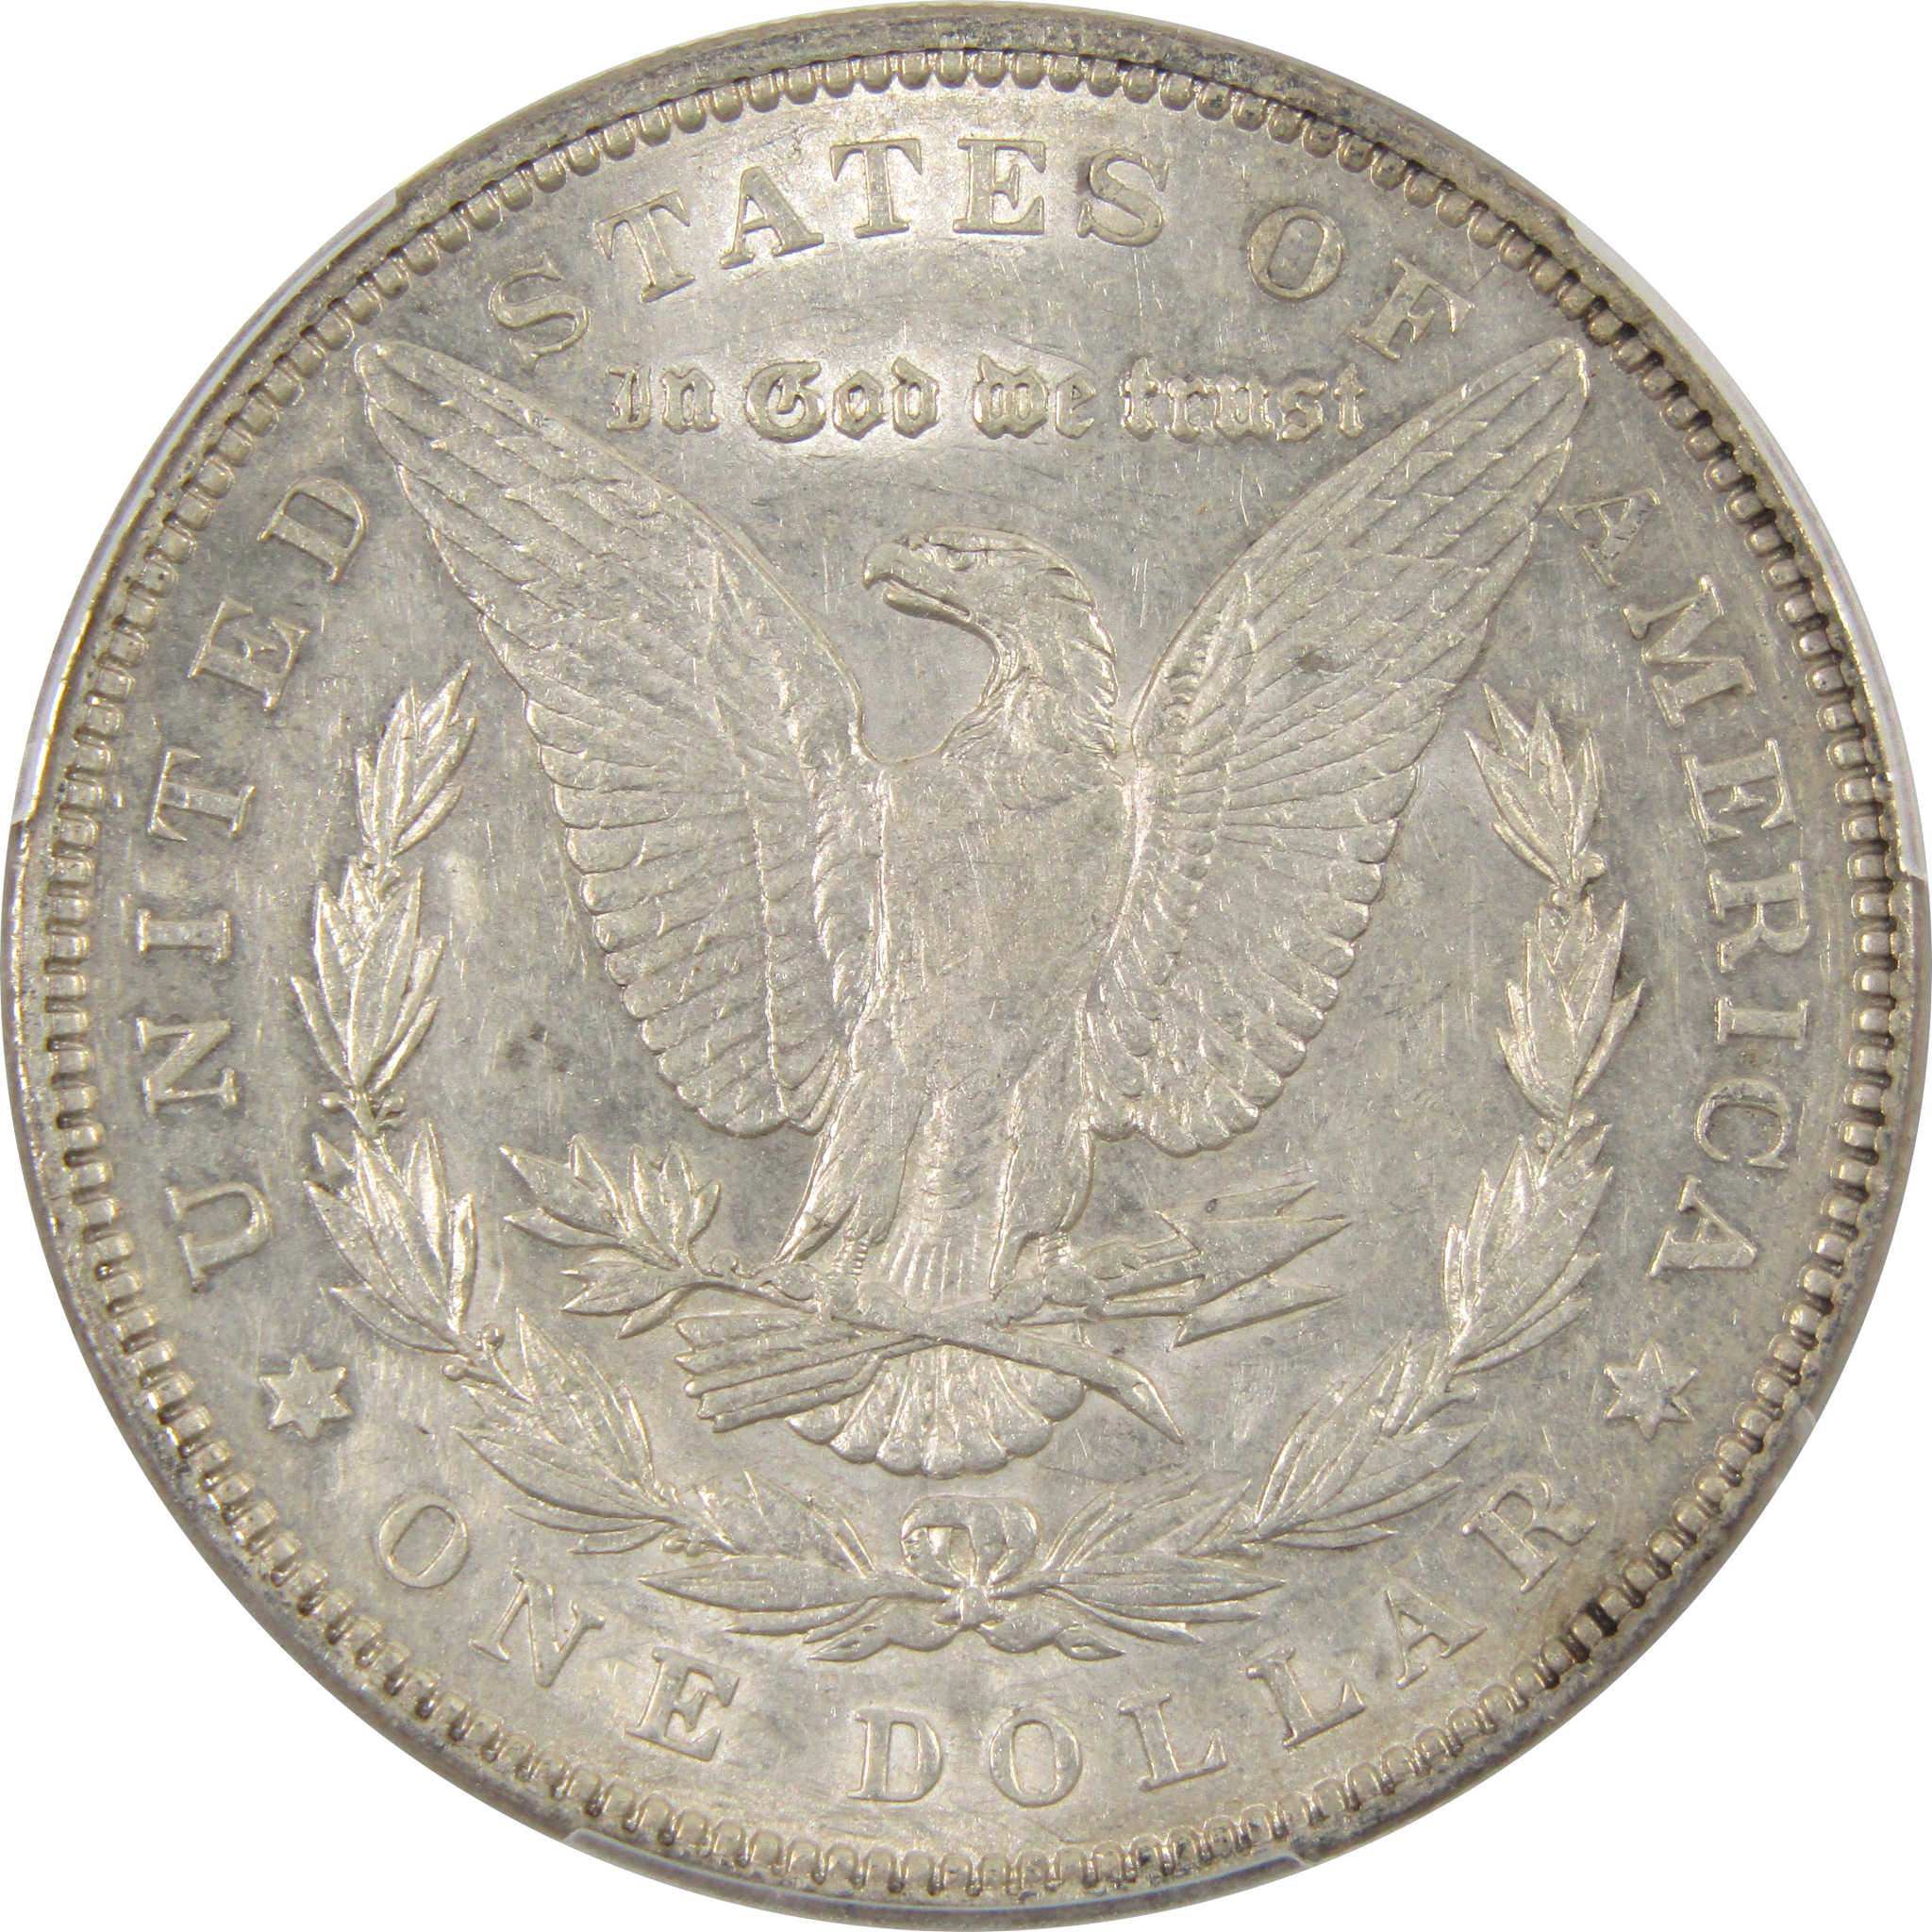 1892 Morgan Dollar AU 53 PCGS 90% Silver $1 Coin SKU:I9124 - Morgan coin - Morgan silver dollar - Morgan silver dollar for sale - Profile Coins &amp; Collectibles